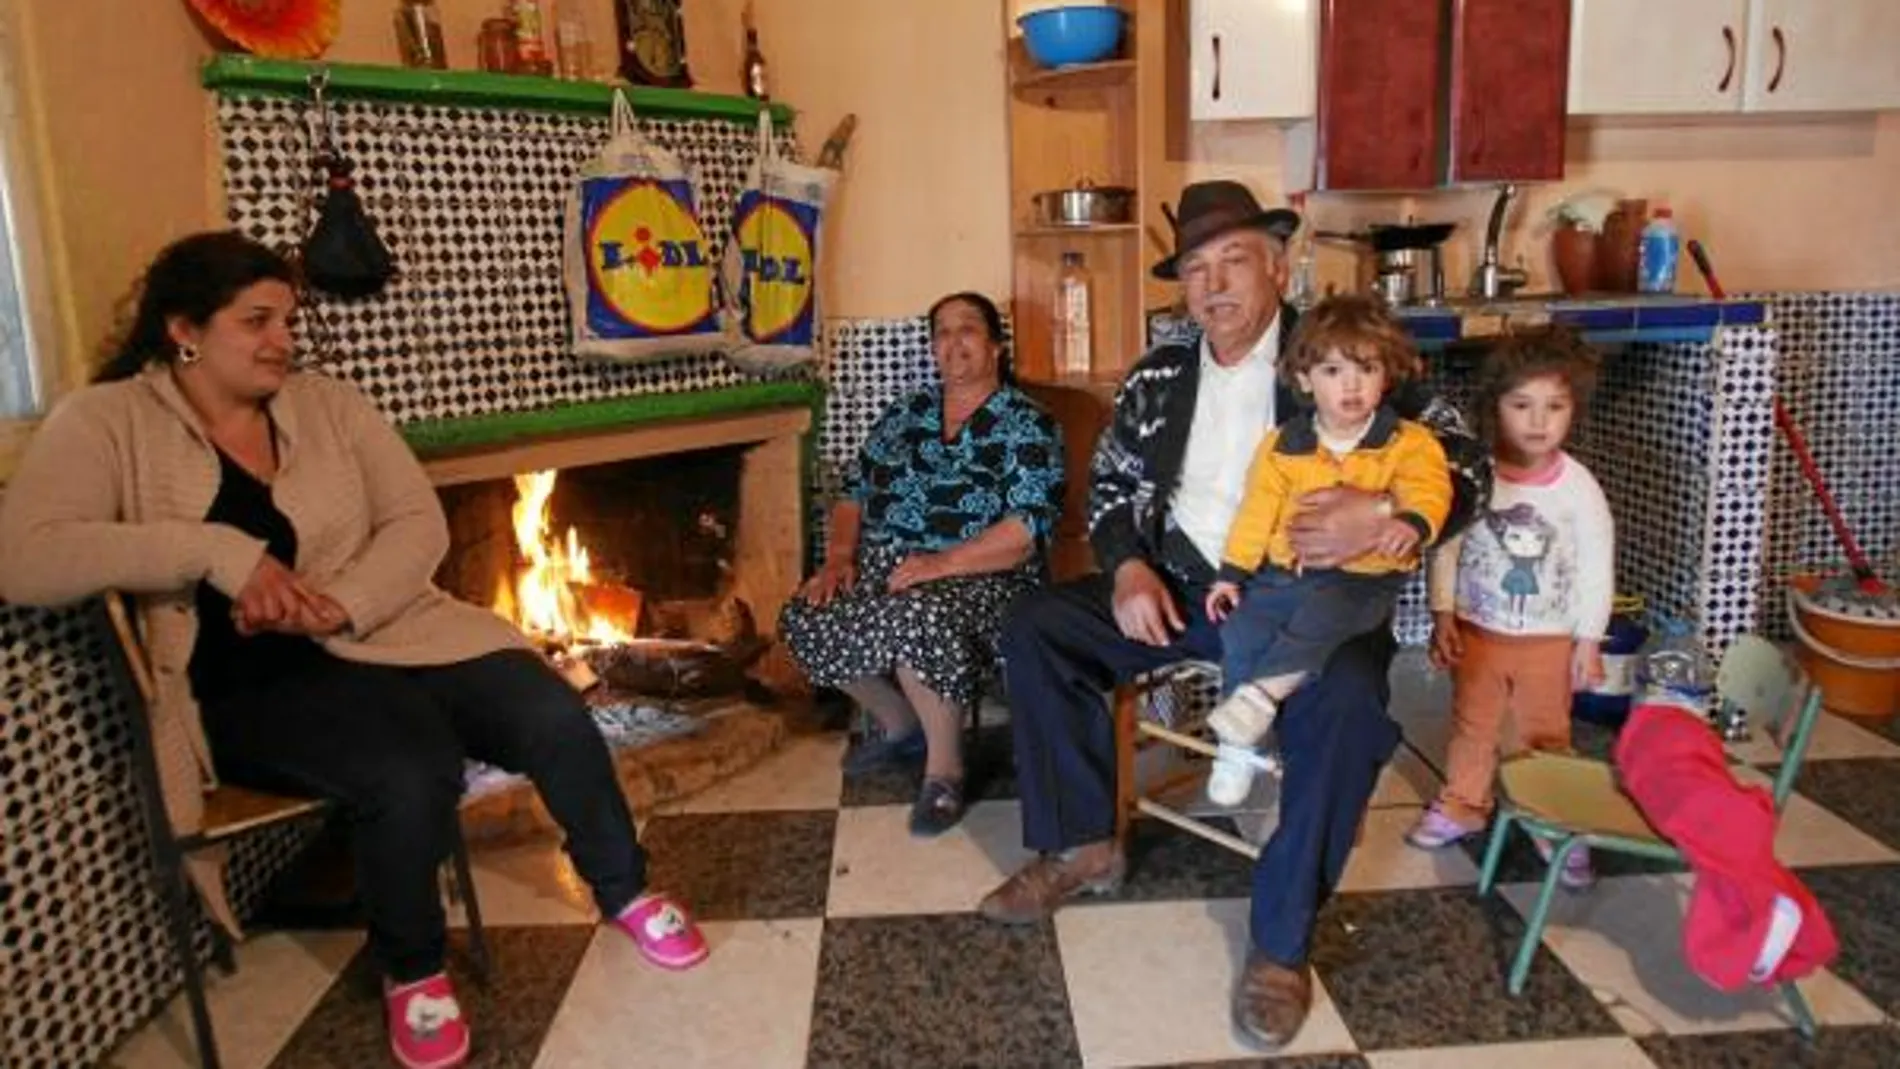 Genaro y su familia viven todos juntos en el Gallinero. Antes estuvieron en el Cañaveral. El patriarca se dedica a la venta de electrodomésticos.